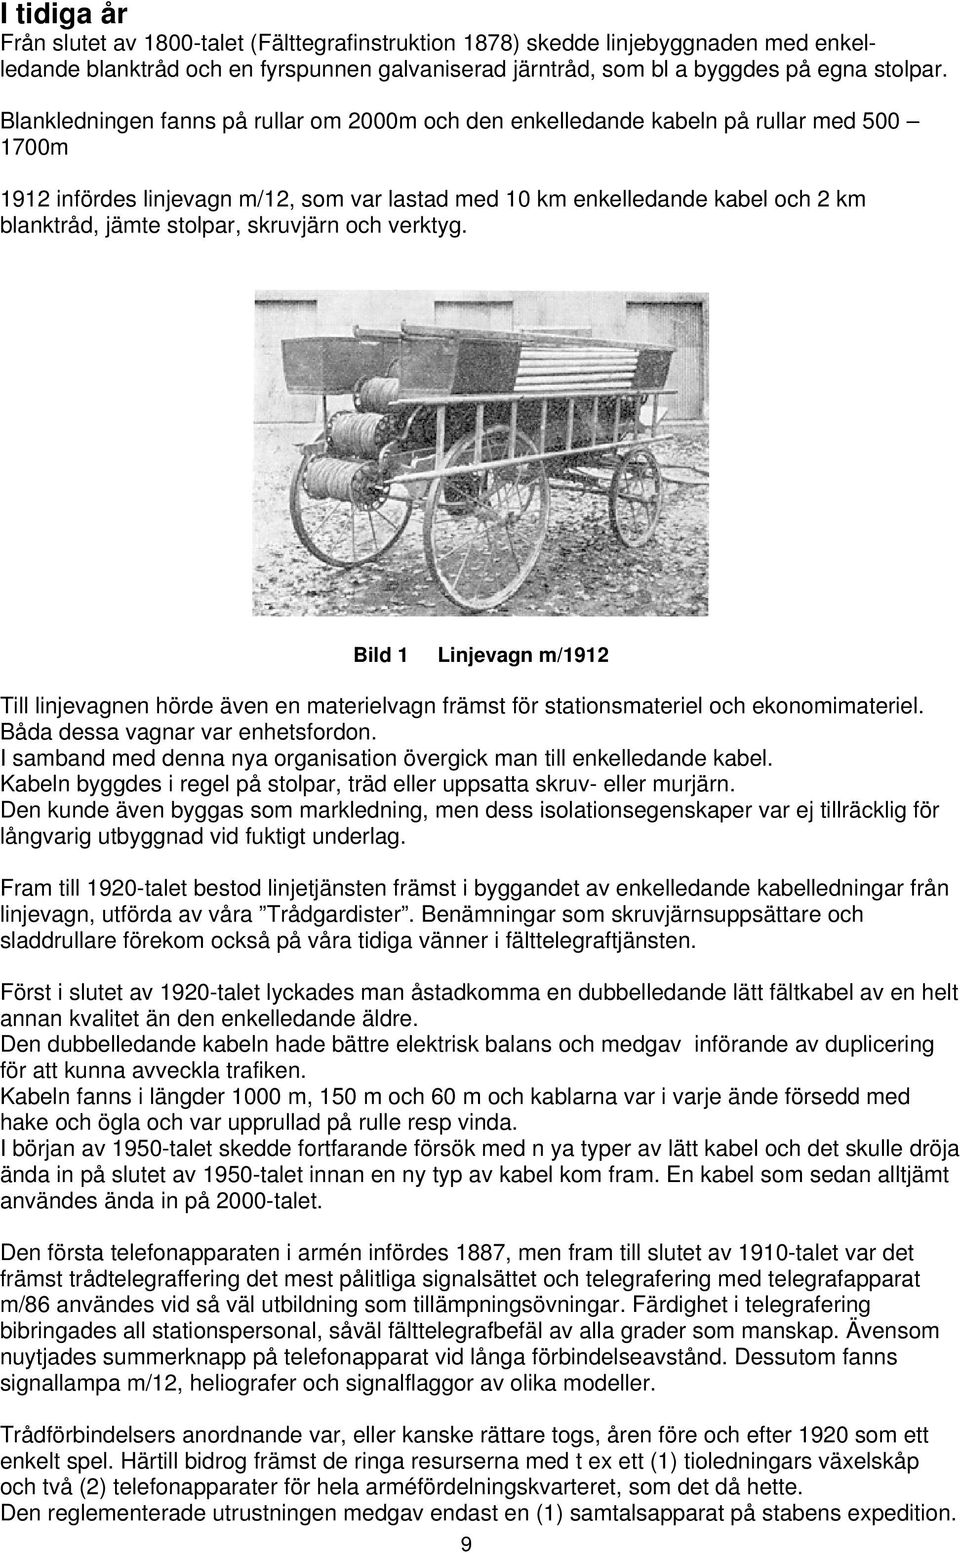 stolpar, skruvjärn och verktyg. Bild 1 Linjevagn m/1912 Till linjevagnen hörde även en materielvagn främst för stationsmateriel och ekonomimateriel. Båda dessa vagnar var enhetsfordon.